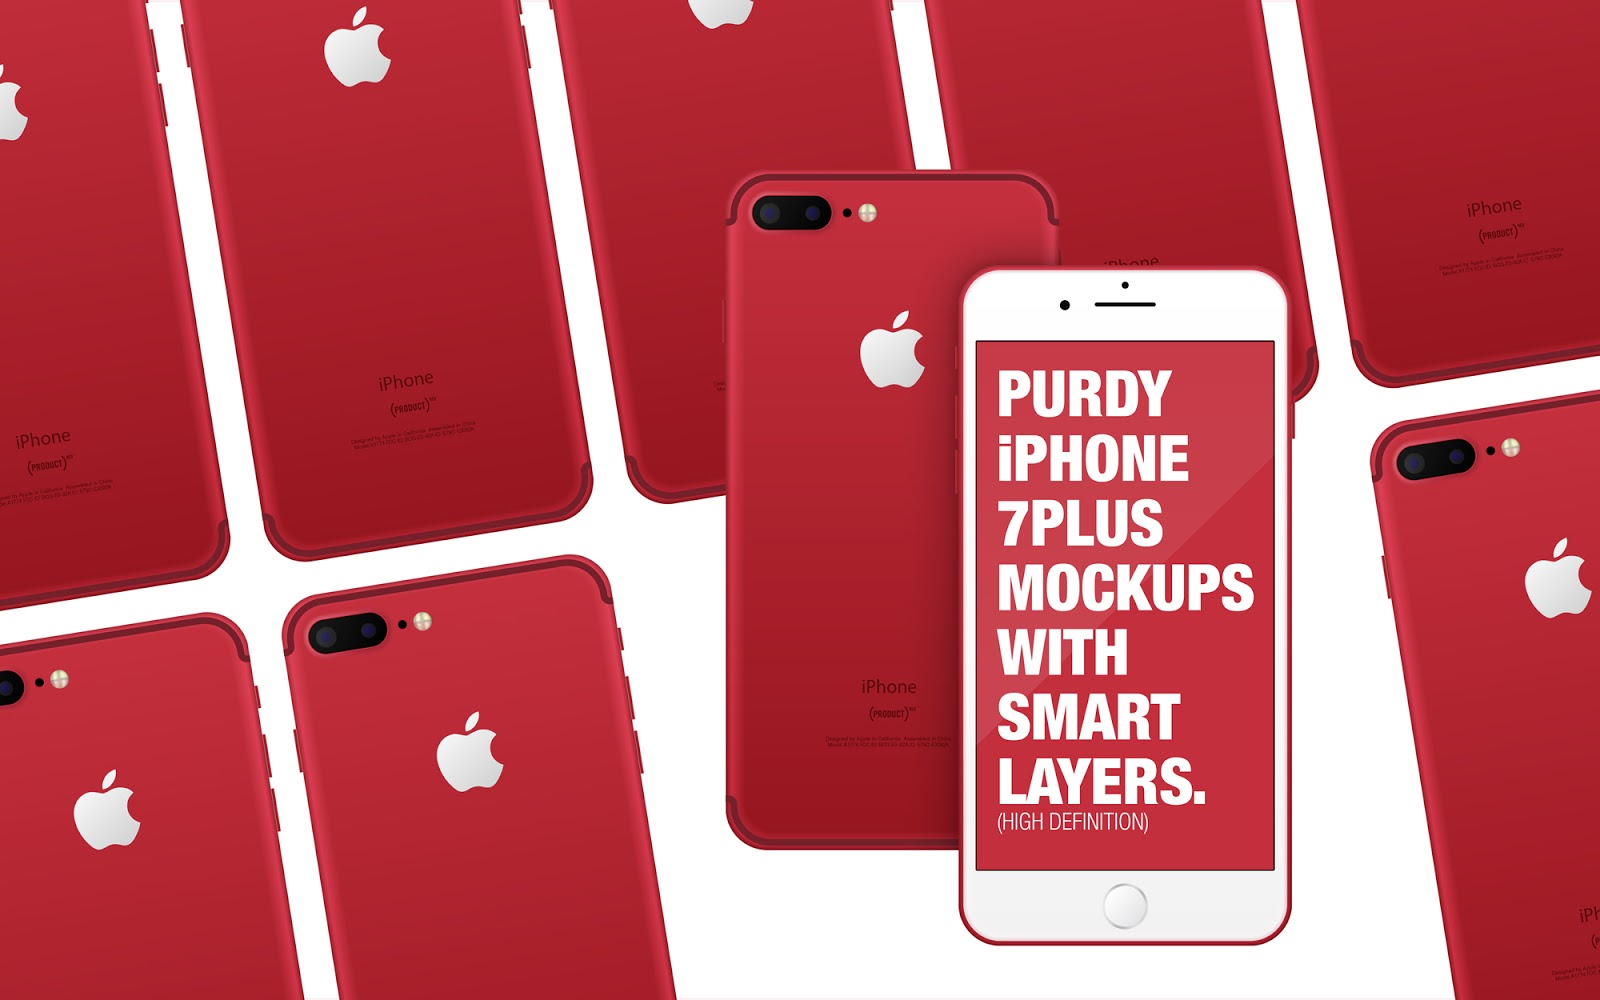 iPhone 7 Plus Red